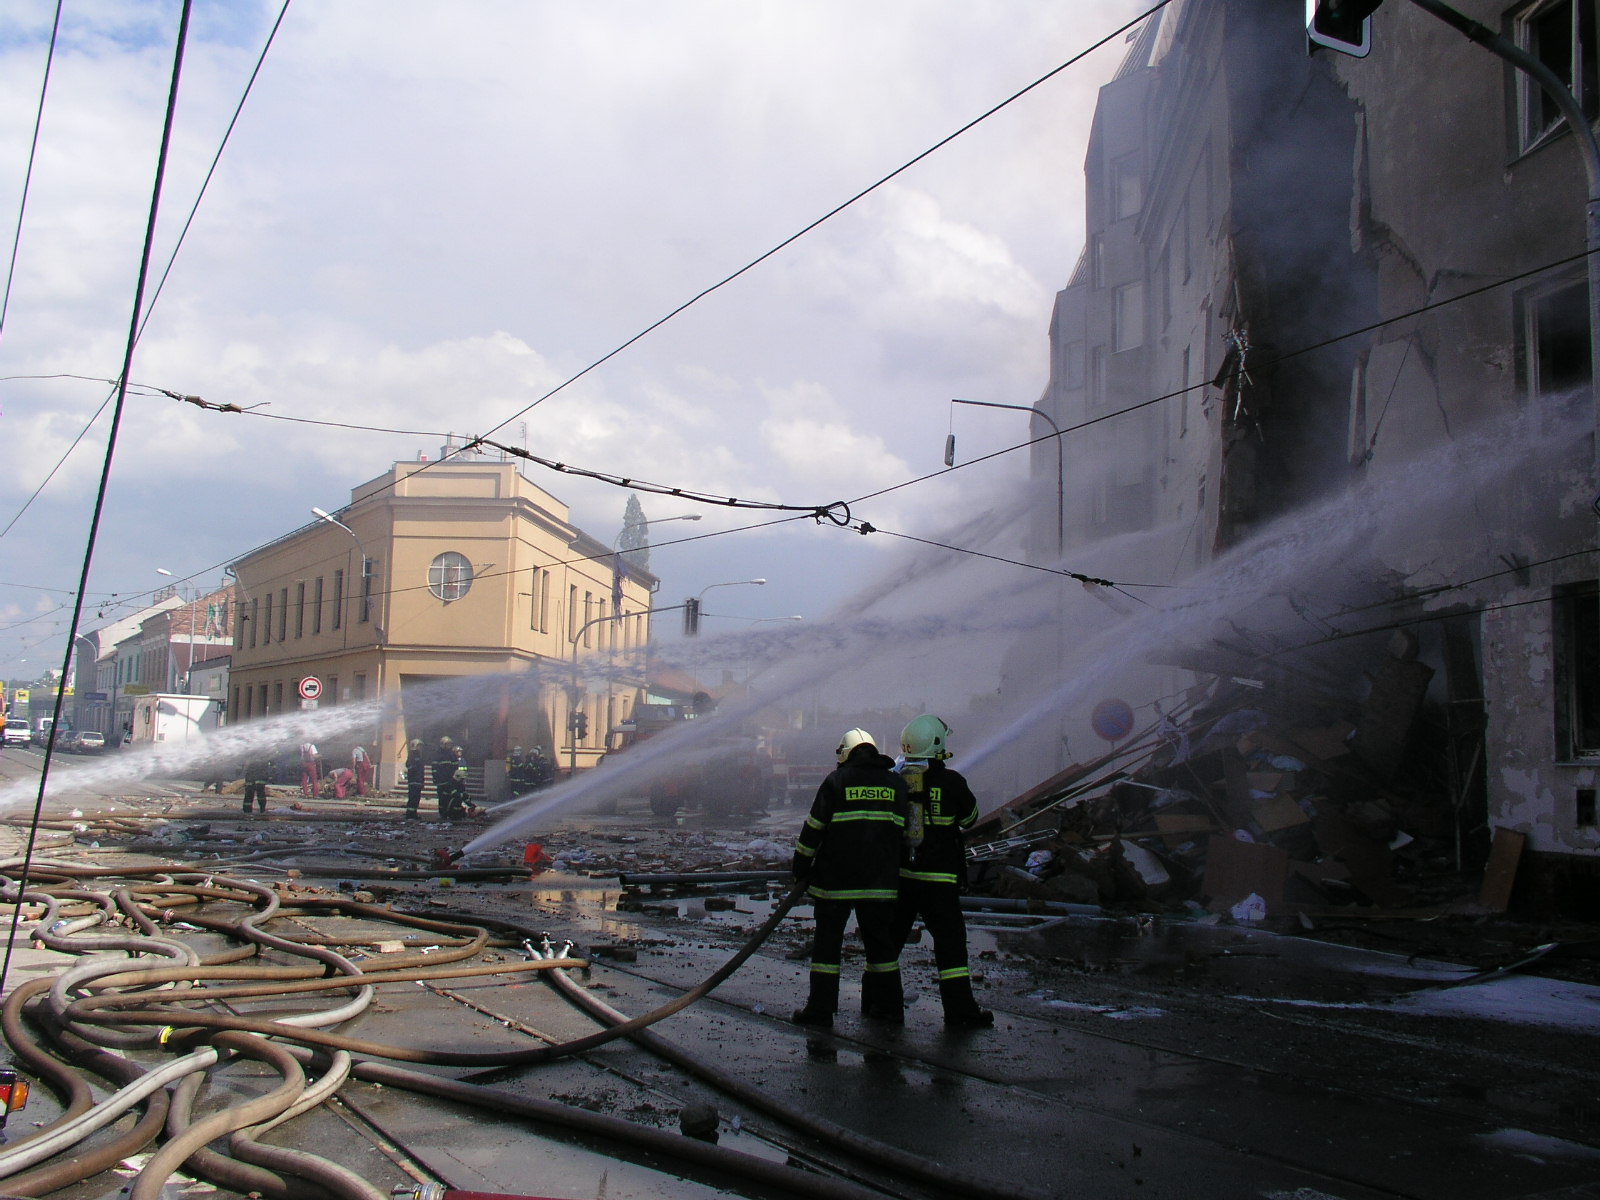 14_JMK_hasiči několika proudy hasí hořící dům na ulici Tržní.JPG